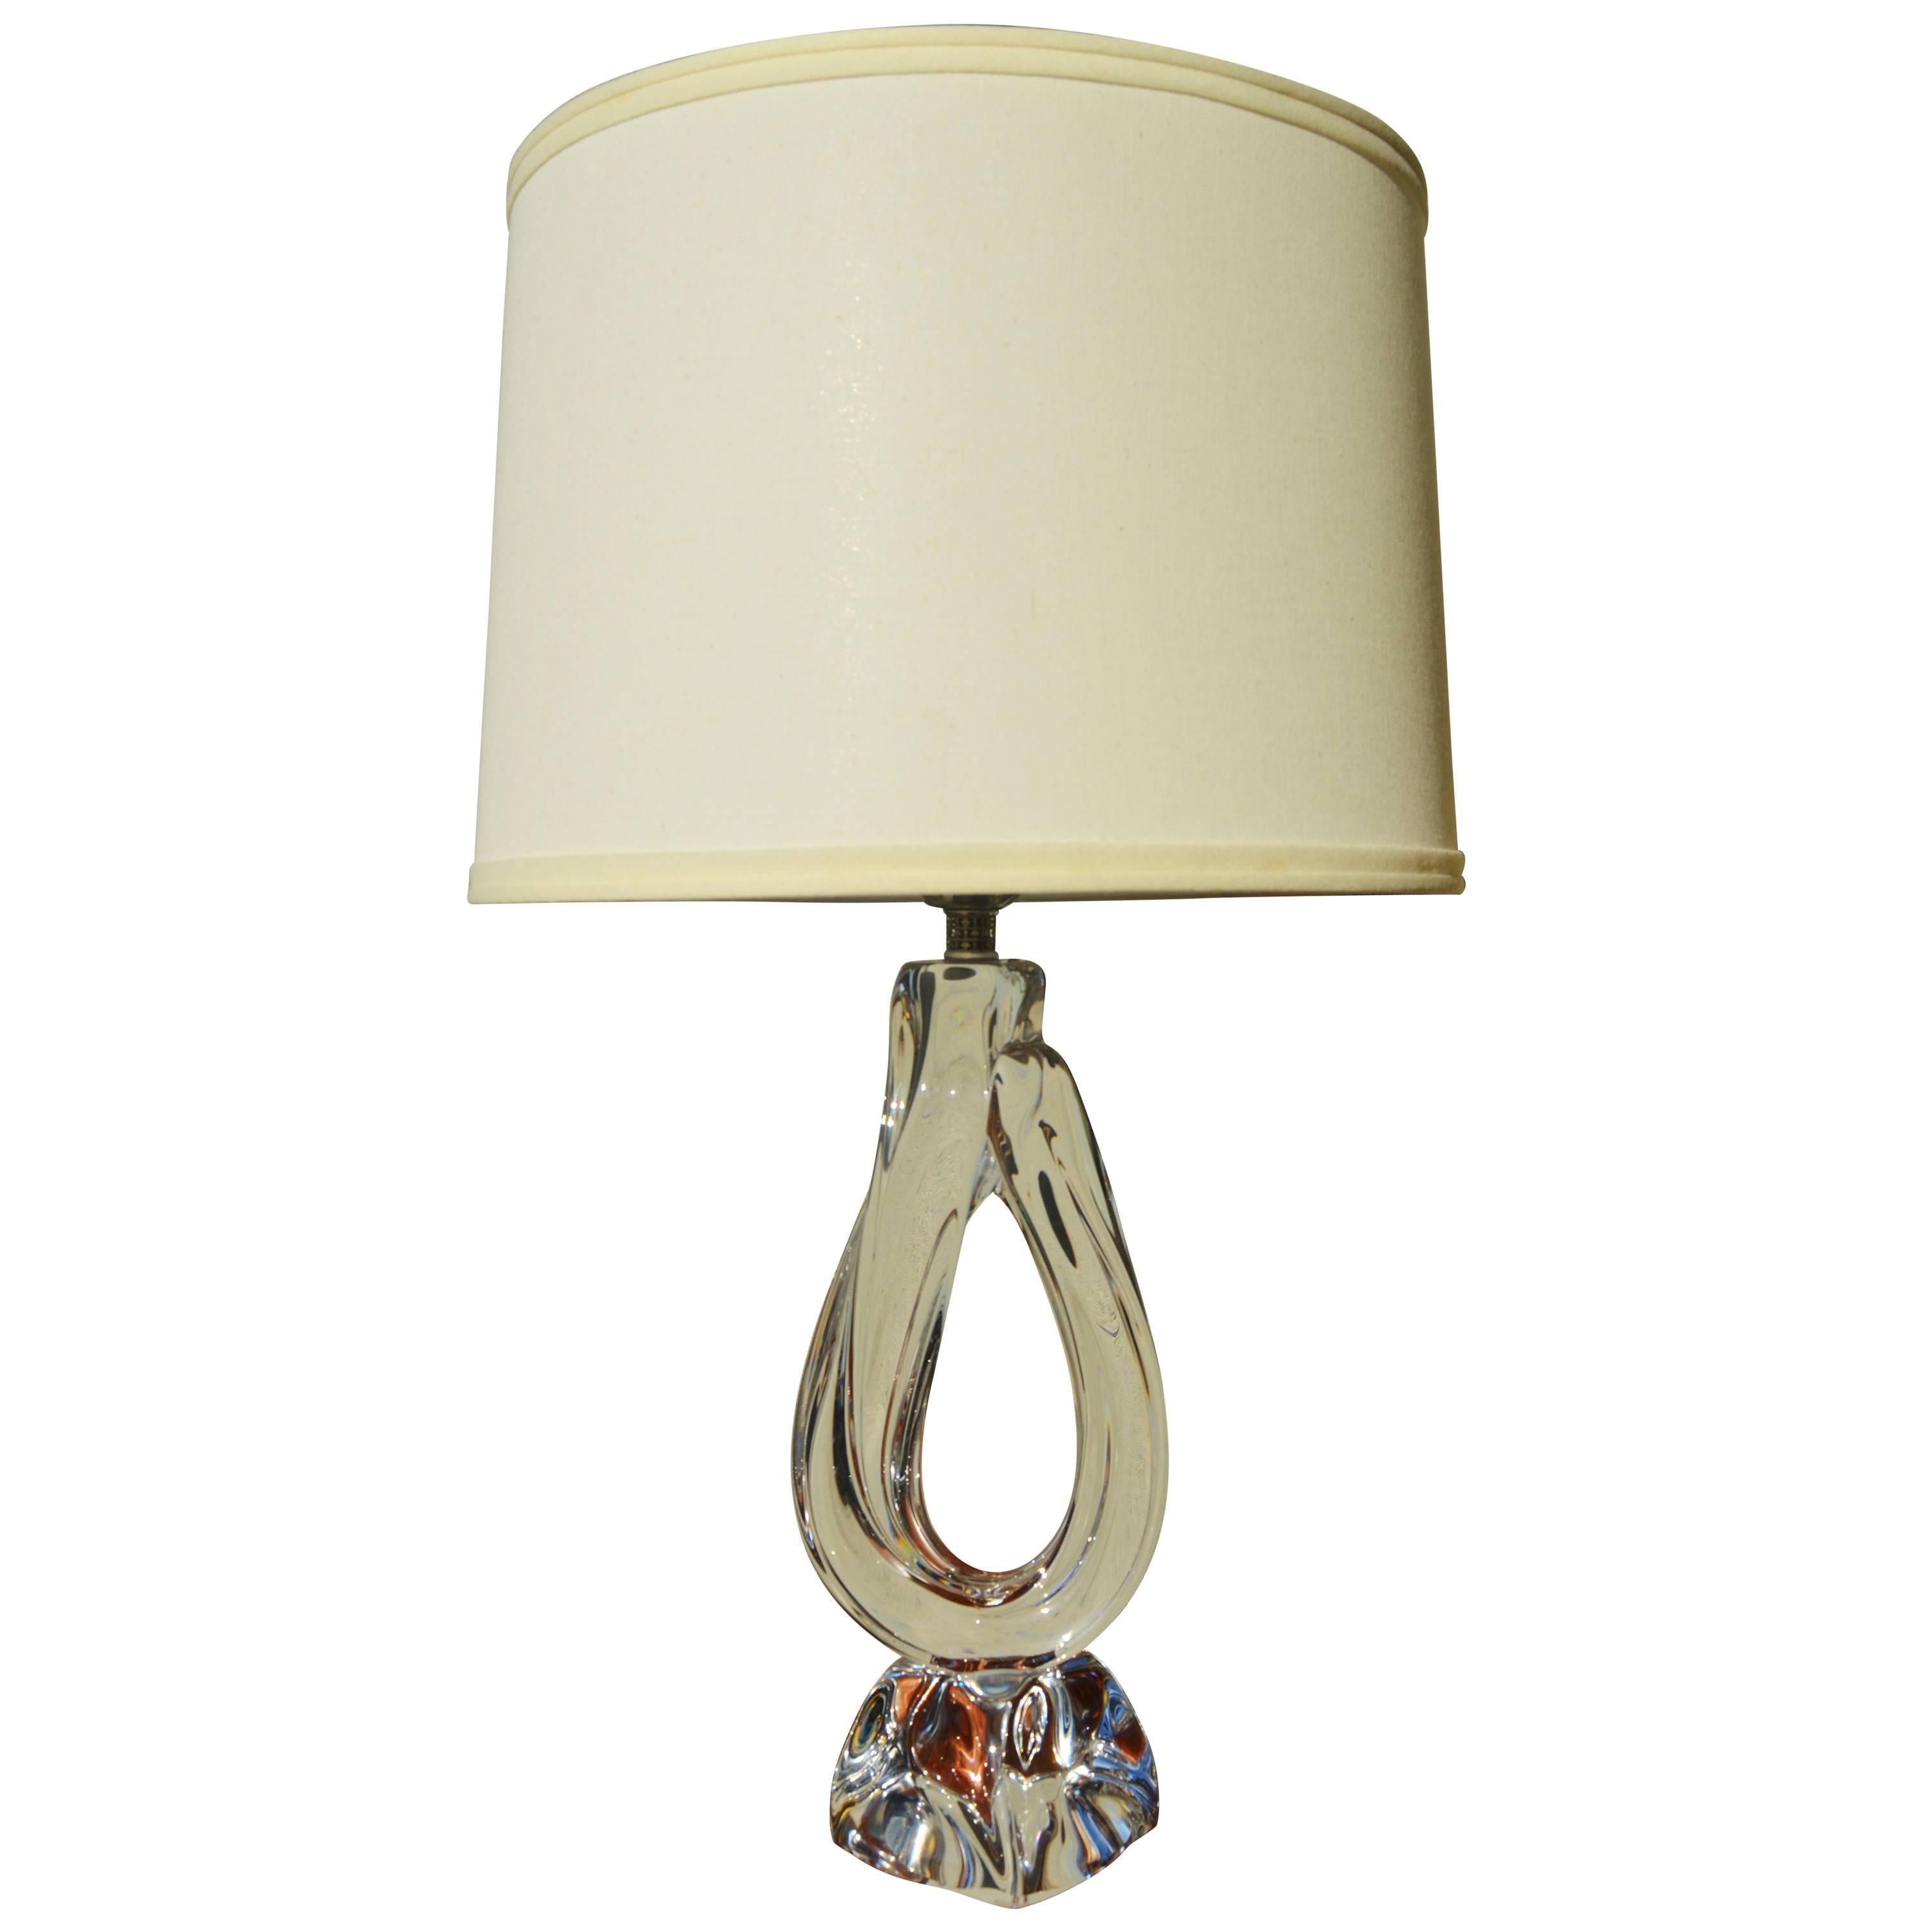 Handblown Crystal Pierced Lamp by Daum